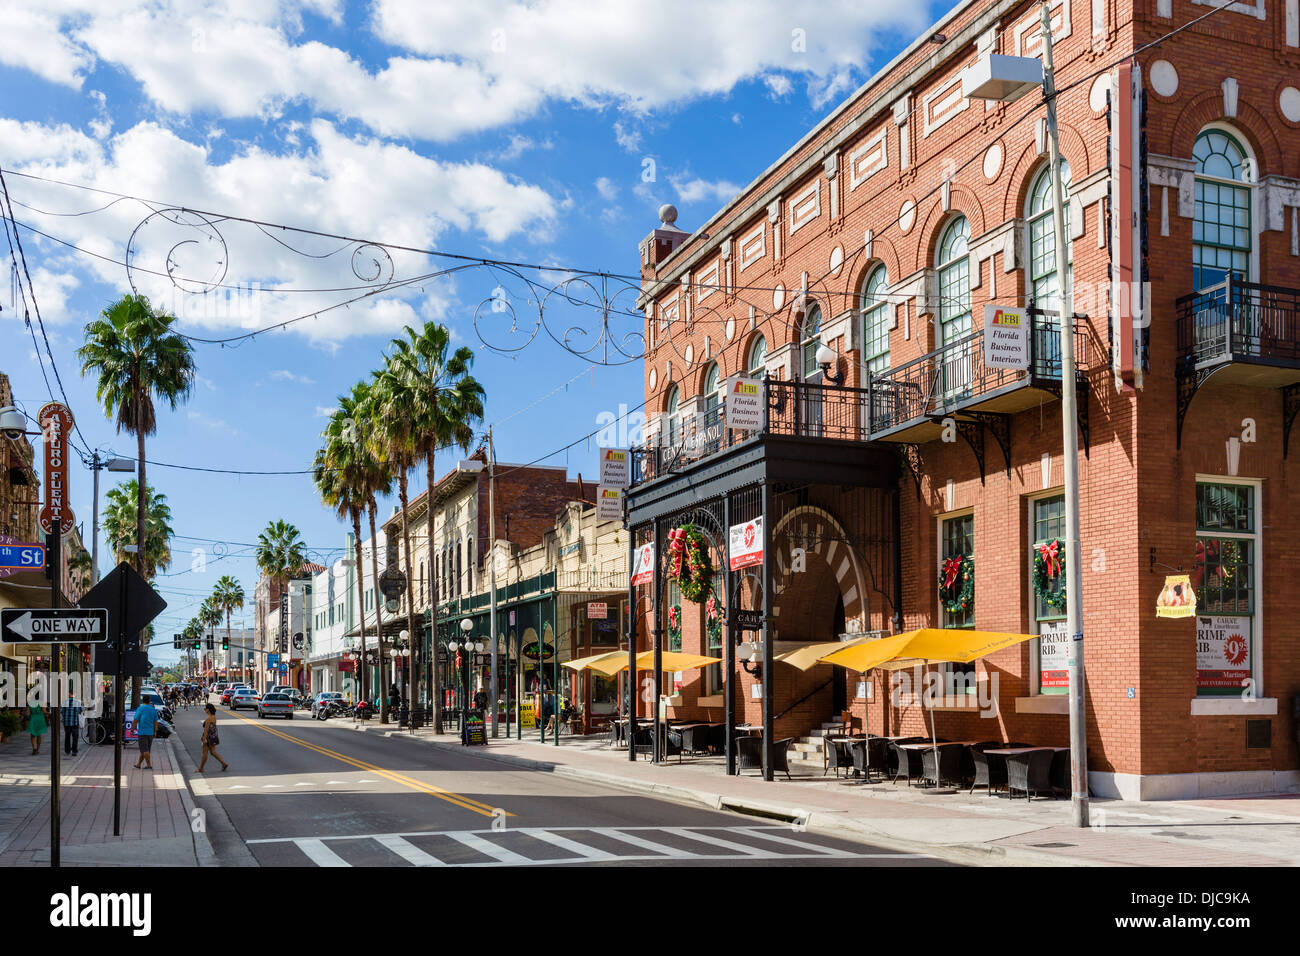 Tiendas, bares y restaurantes en la séptima avenida, en la histórica Ybor City, con el Centro Español de la derecha, en Tampa, Florida, EE.UU. Foto de stock